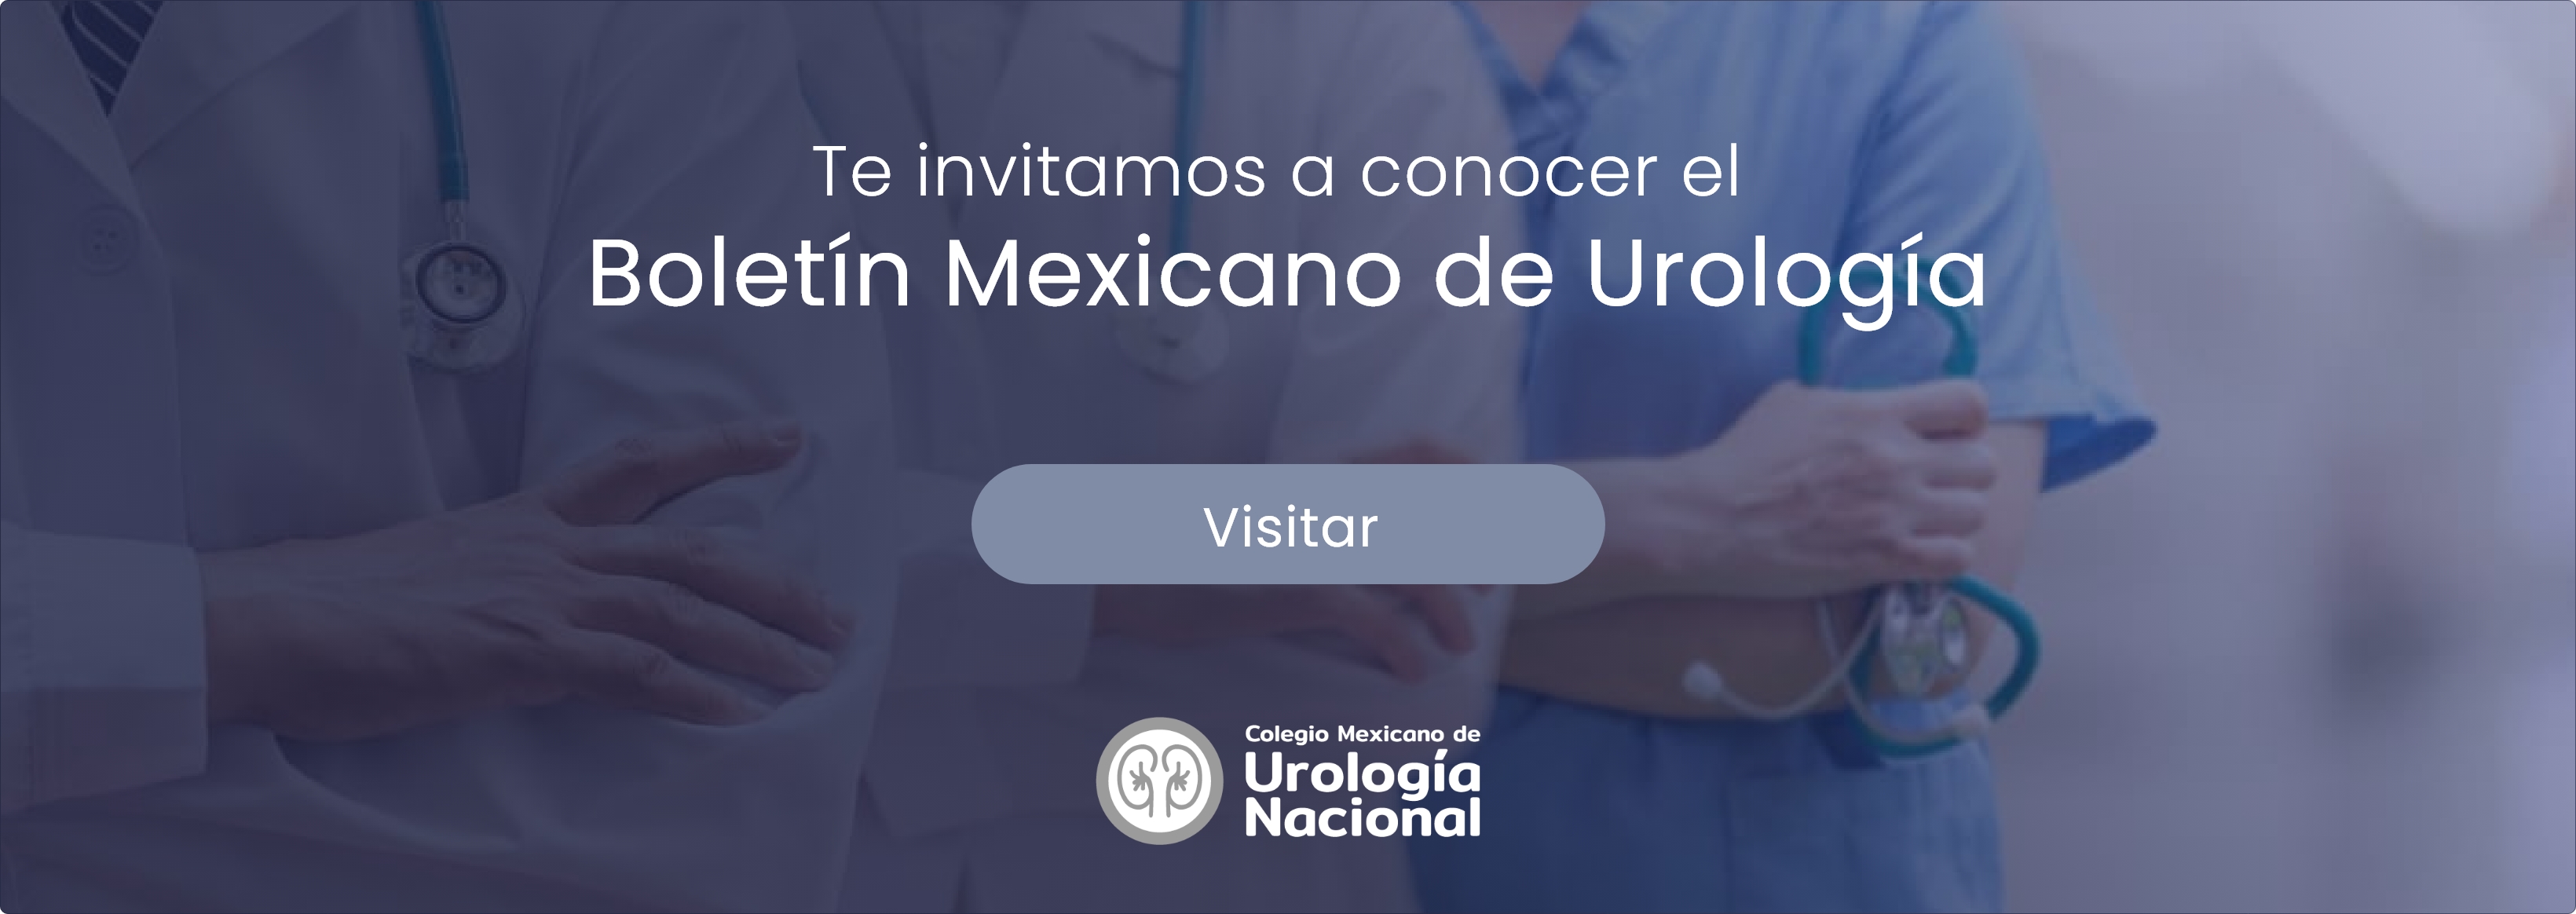 Visita el boletín mexicano de urología